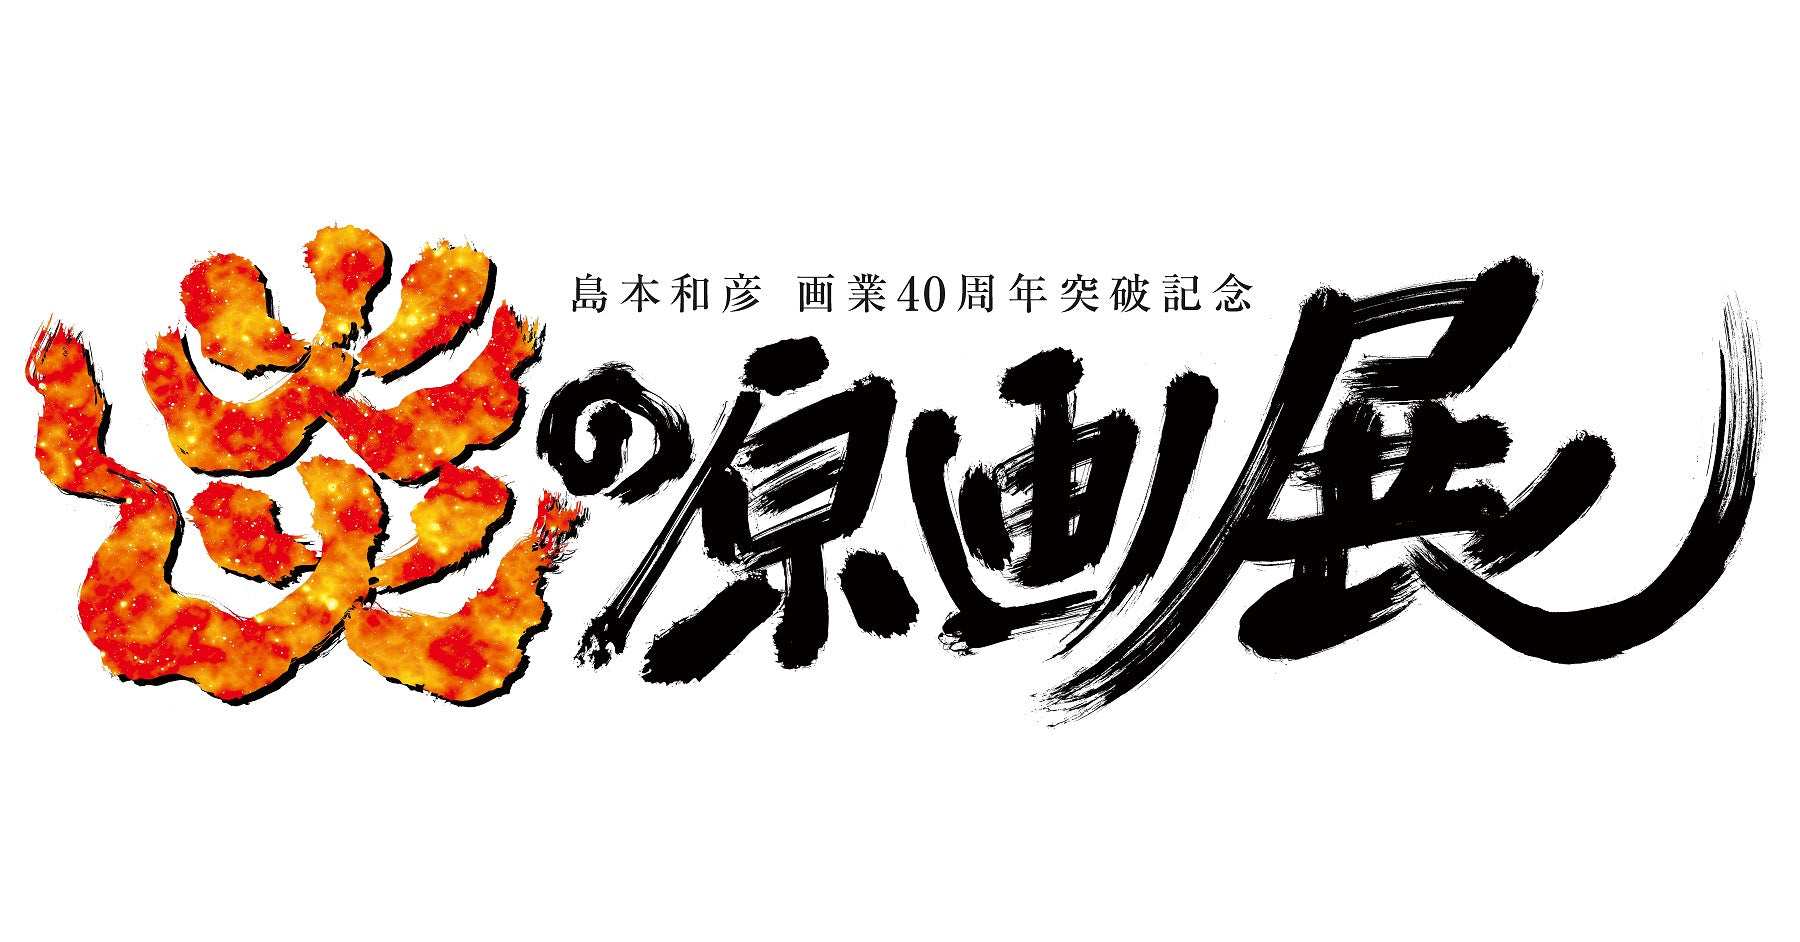 島本和彦『炎の原画展』in 有楽町マルイ 4月28日より開催!